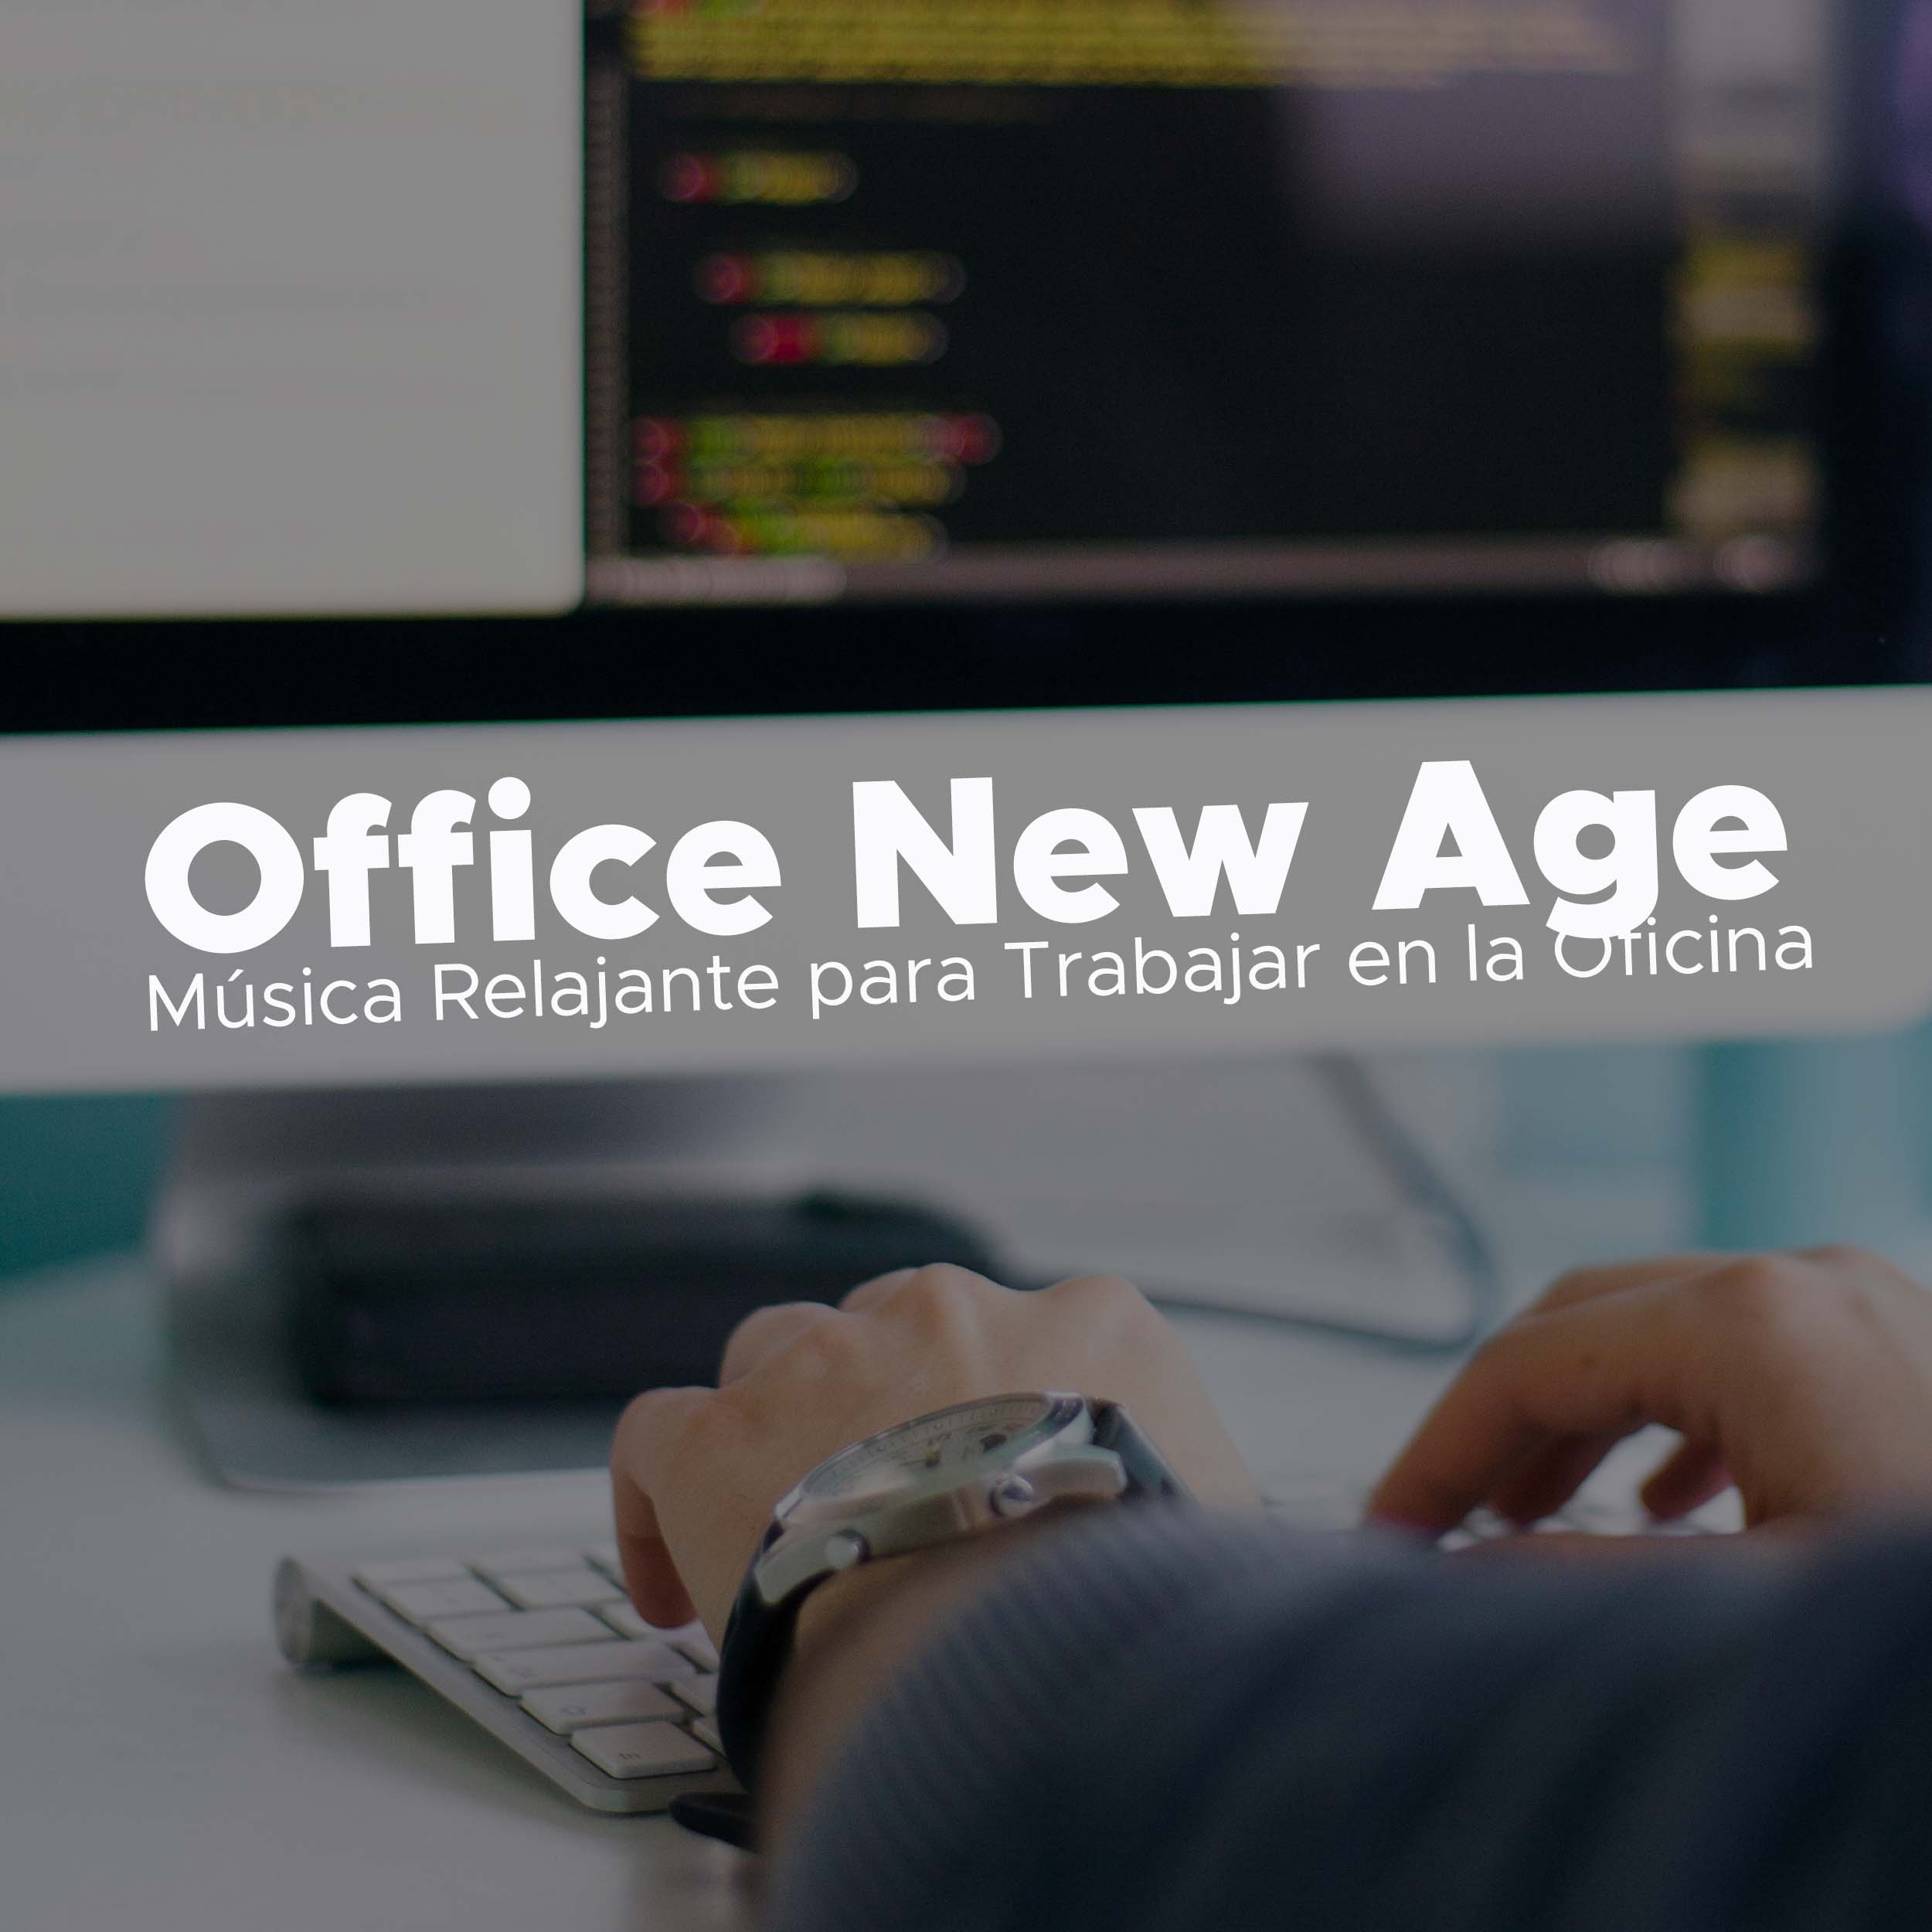 Office New Age - Musica Relajante para Trabajar en la Oficina